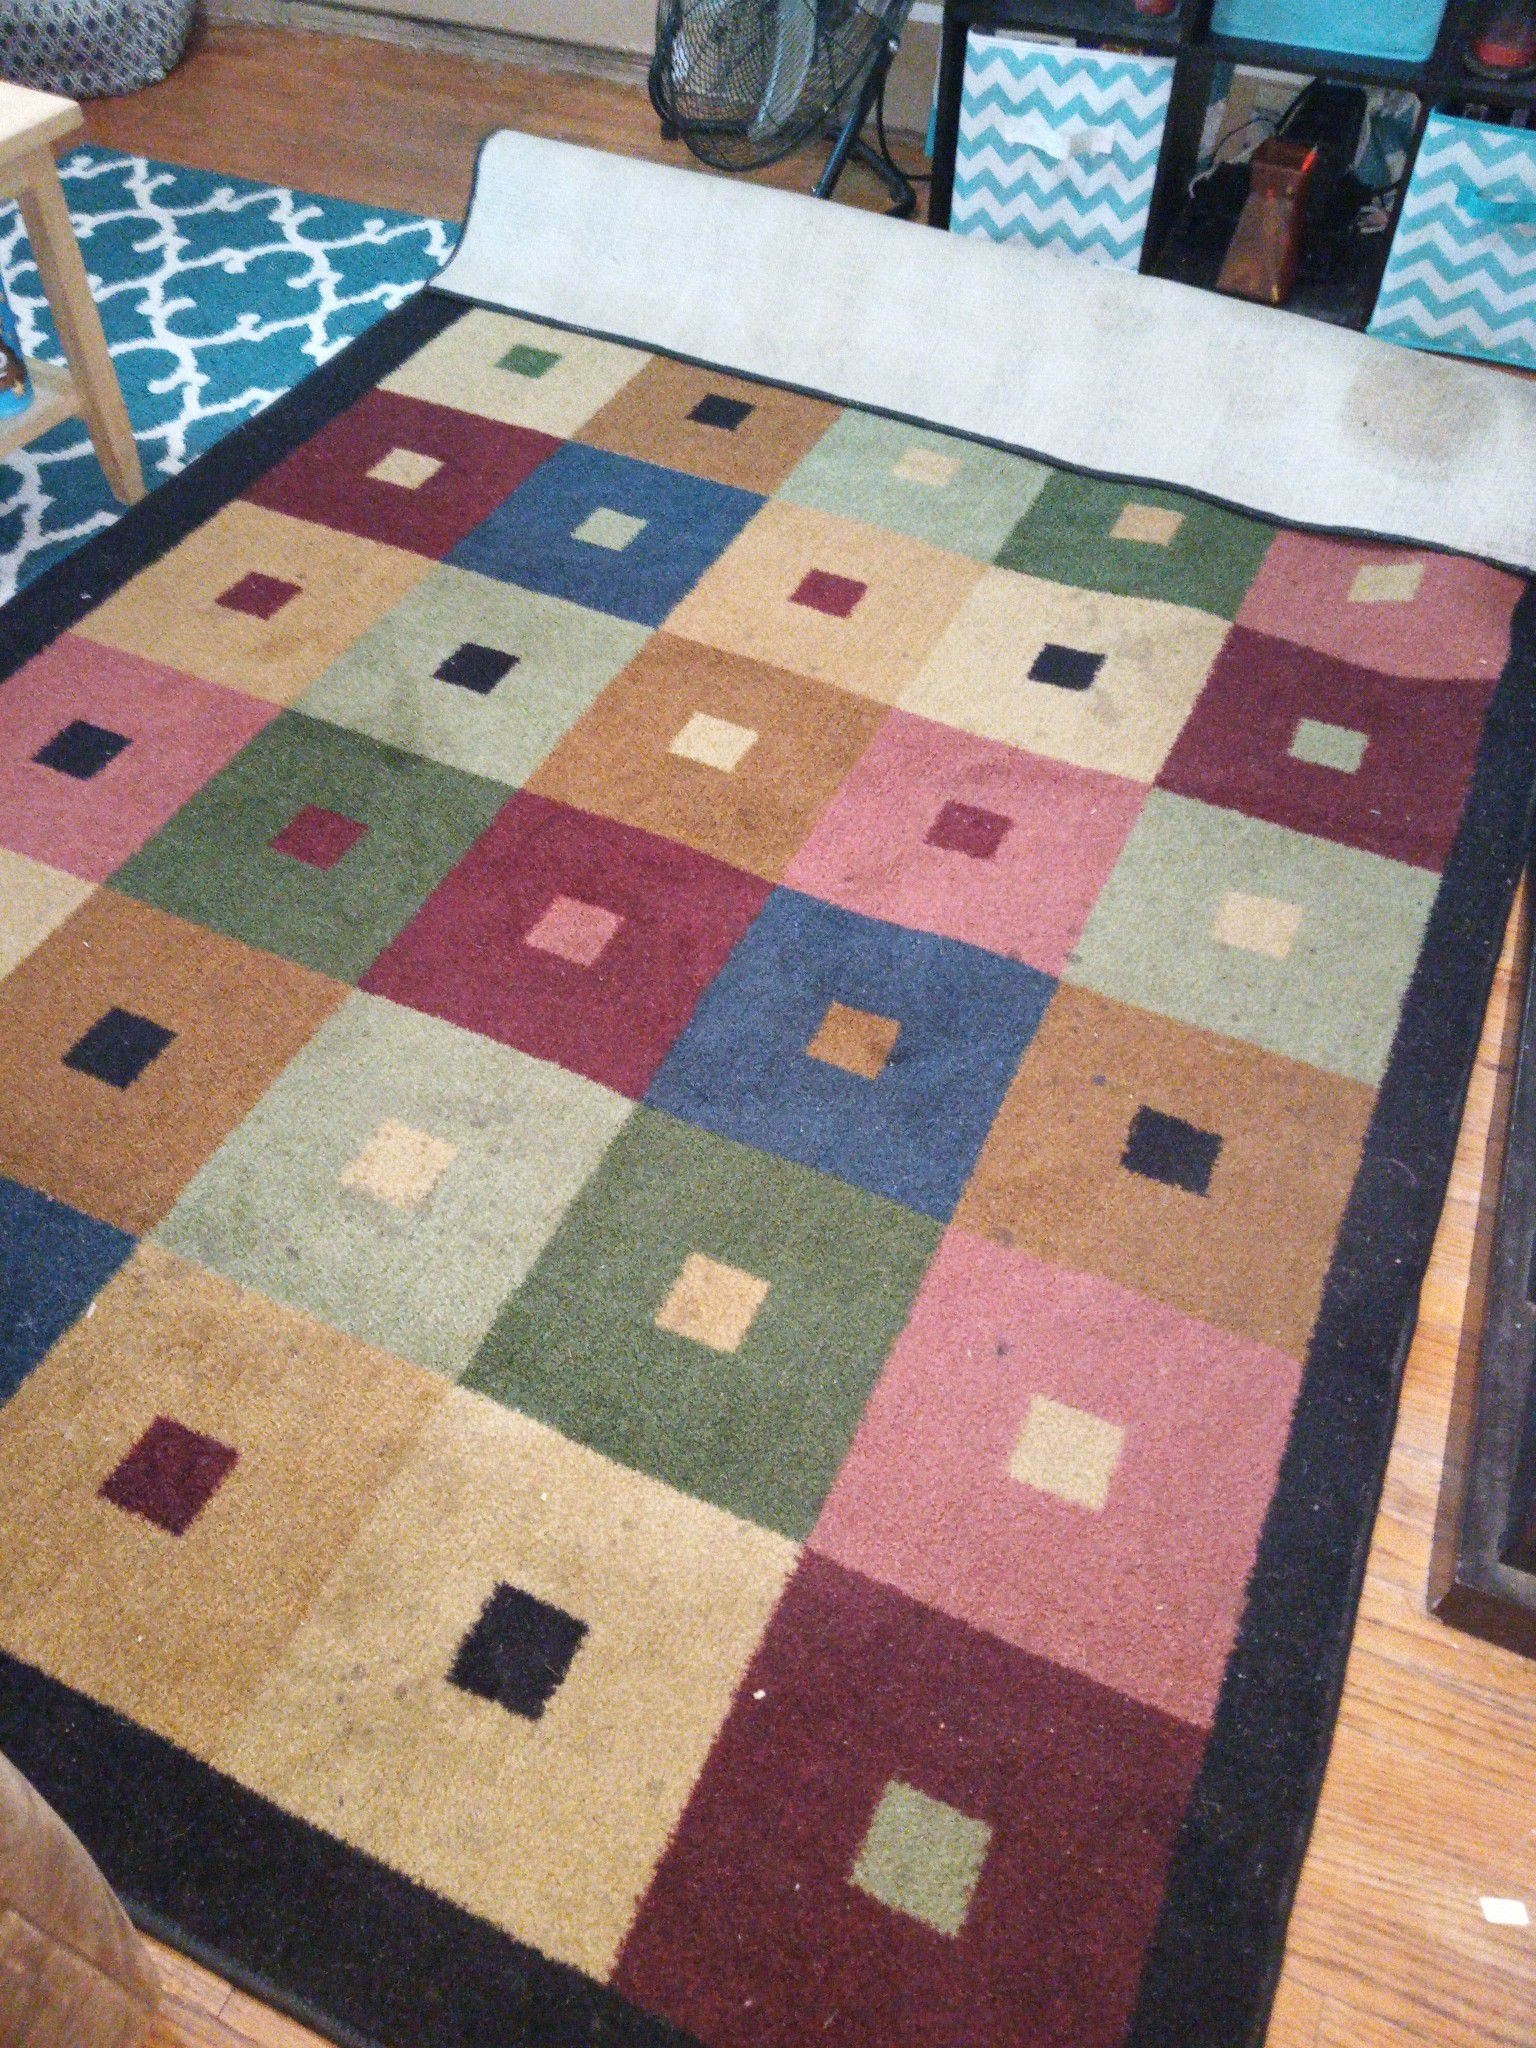 5 x 7 area rug